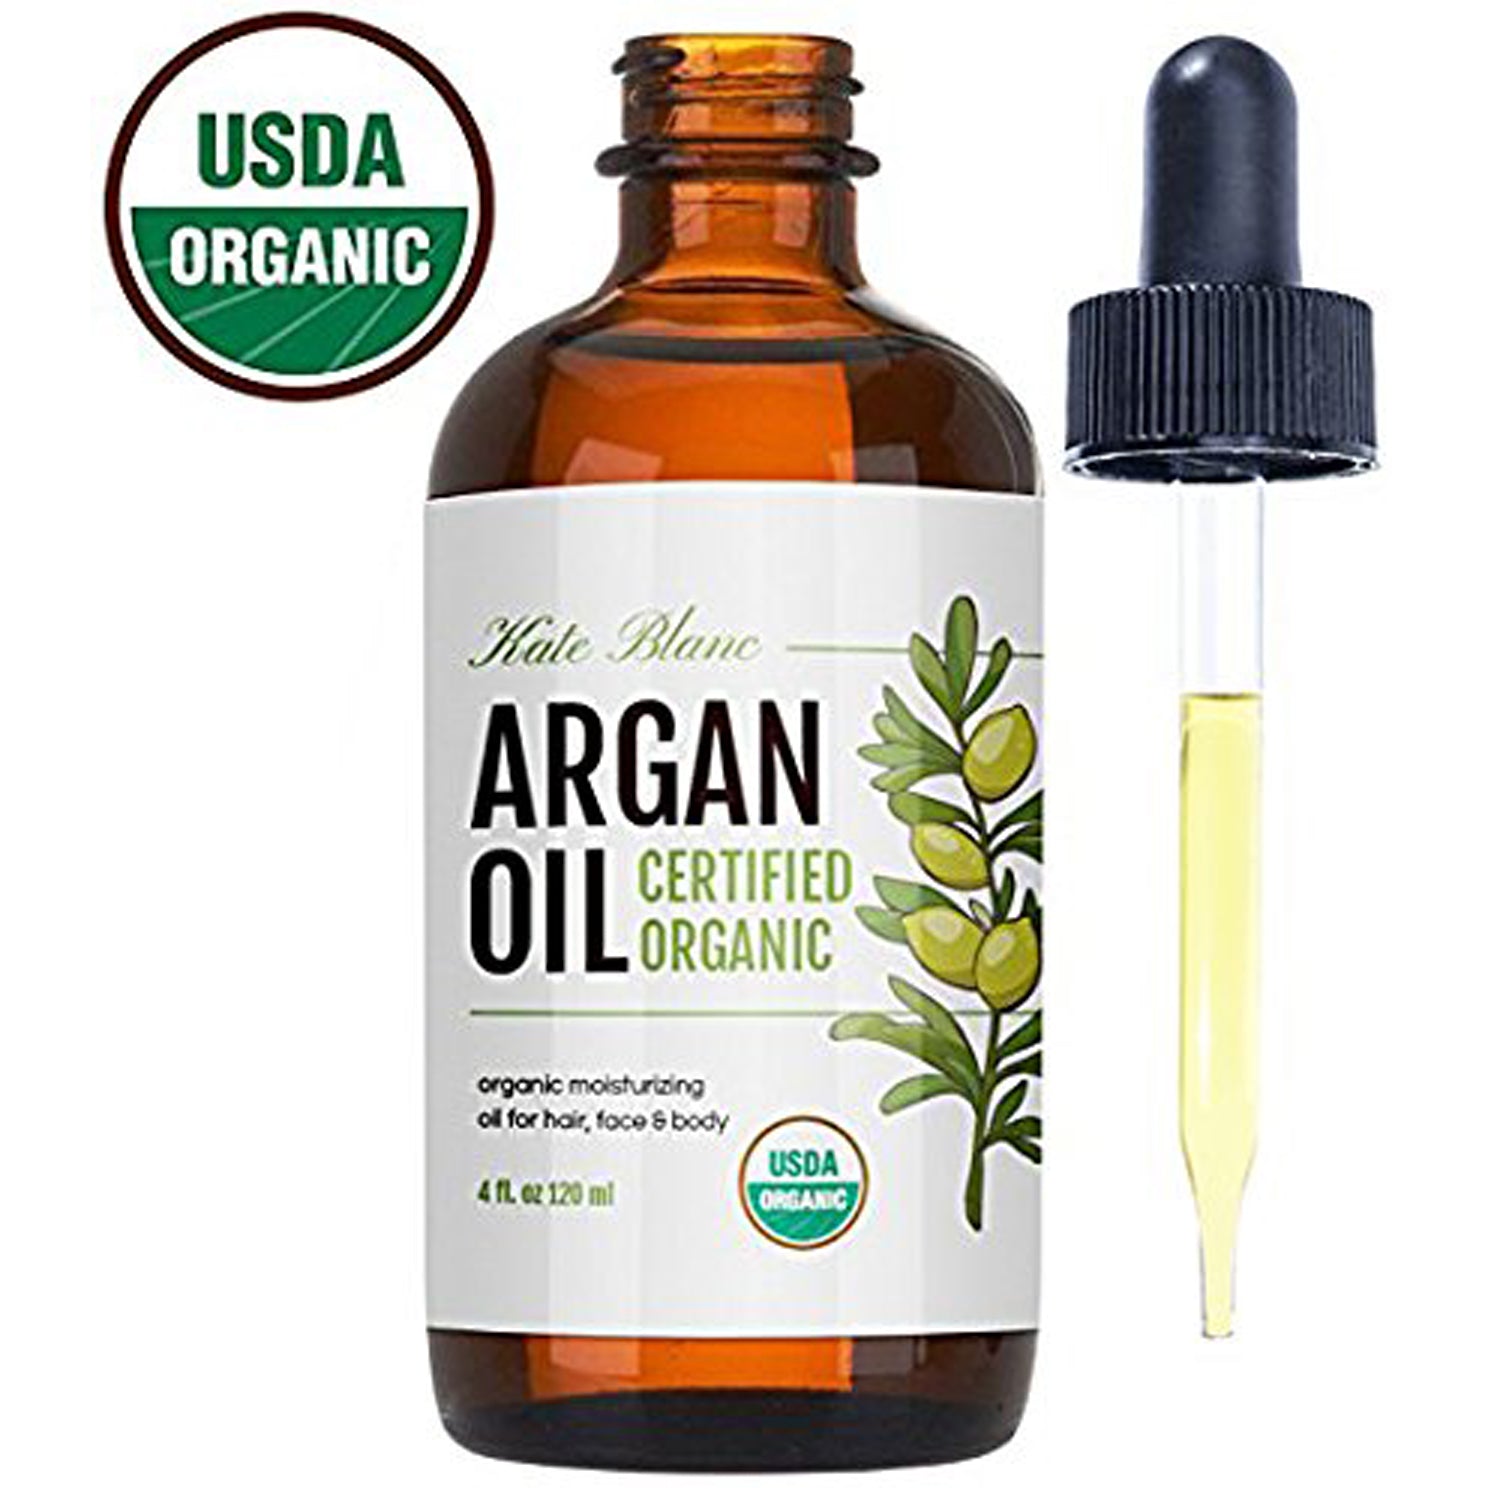 Colorbar Argan oil for Hair Growth - YouTube